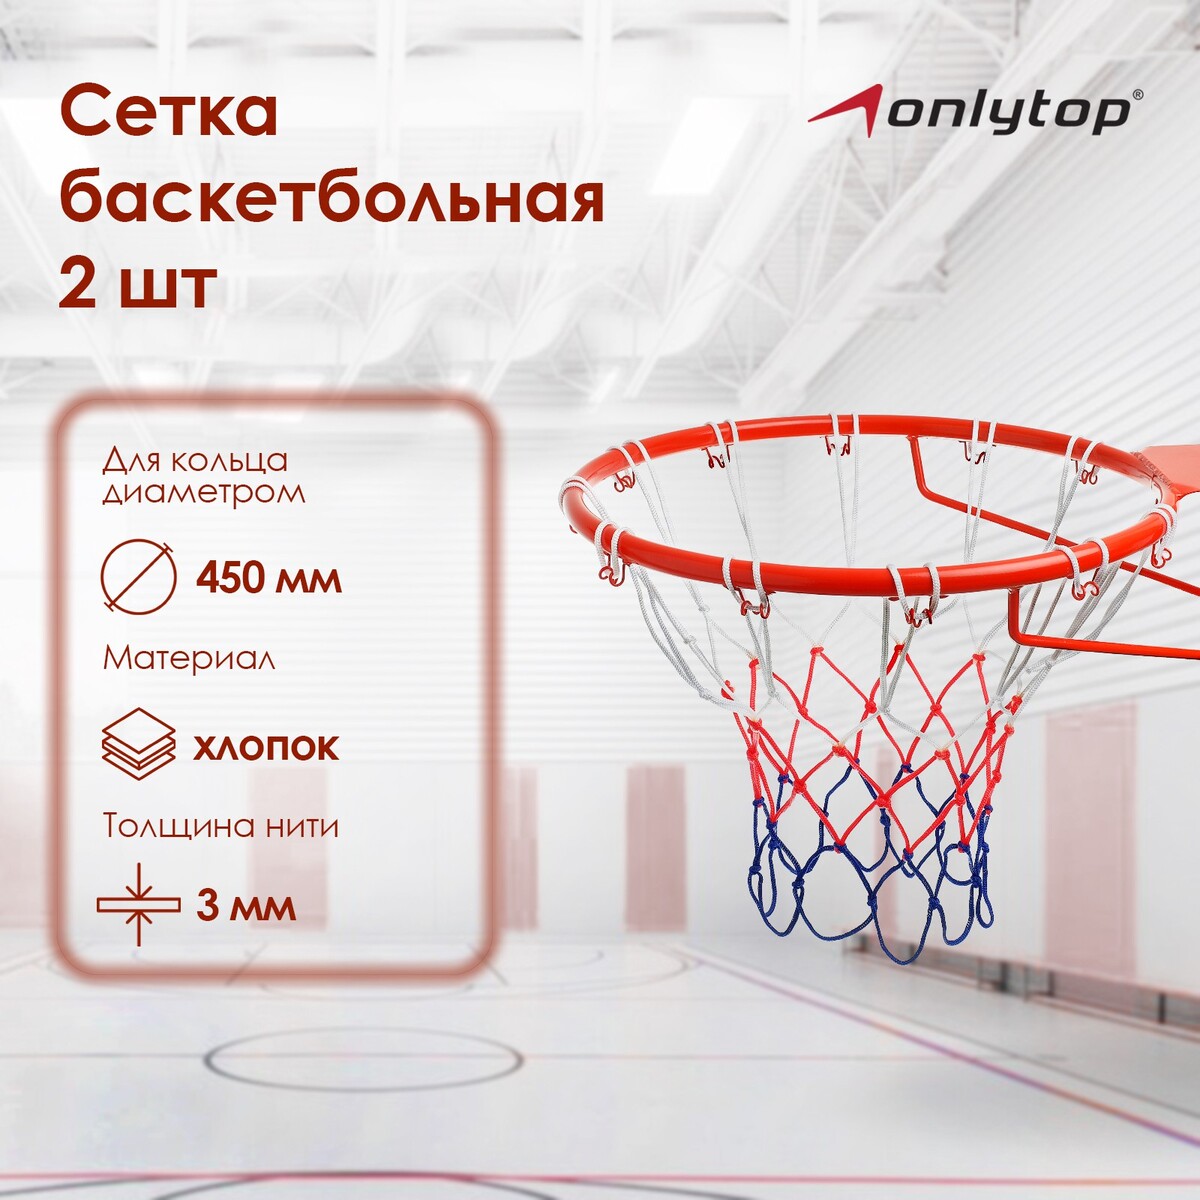 Сетка баскетбольная onlytop, 50 см, нить 3 мм, 2 шт. сетка баскетбольная металическая цепь шт гимнаст 2 15